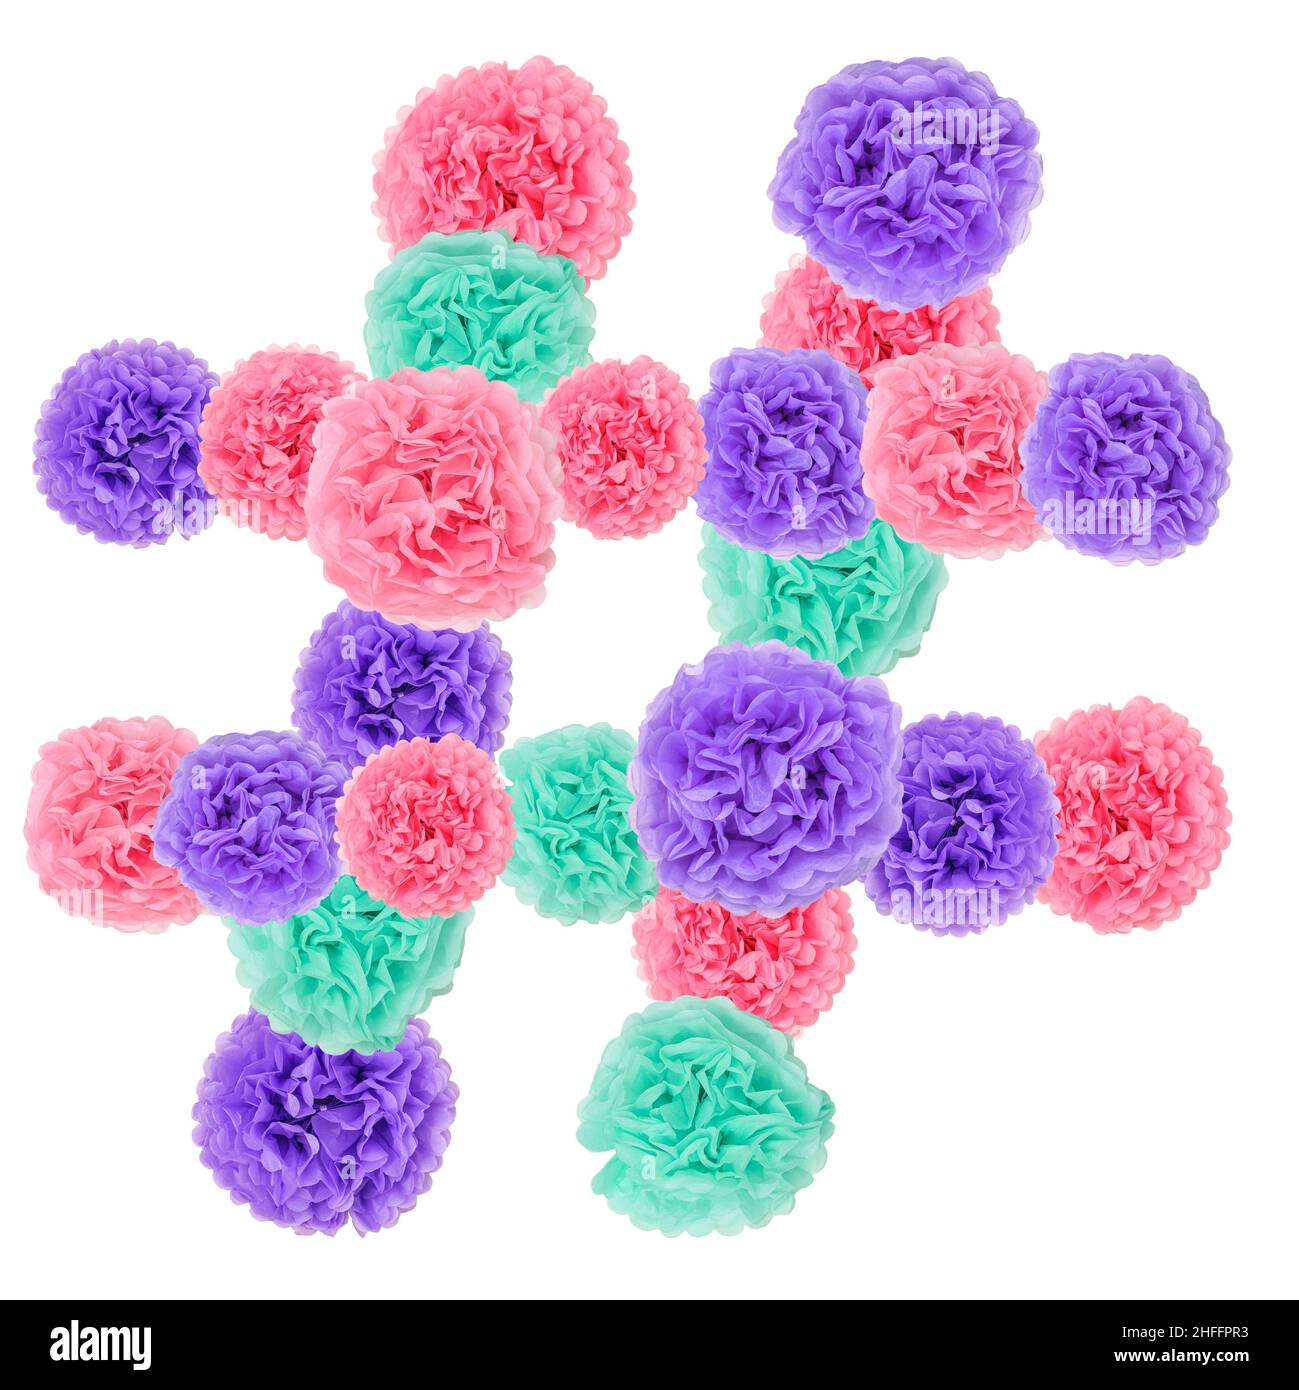 Symbole hashtag ou hashtag collage de fleurs de papier pastel isolé sur blanc.Applications, concept de réseaux sociaux. Banque D'Images